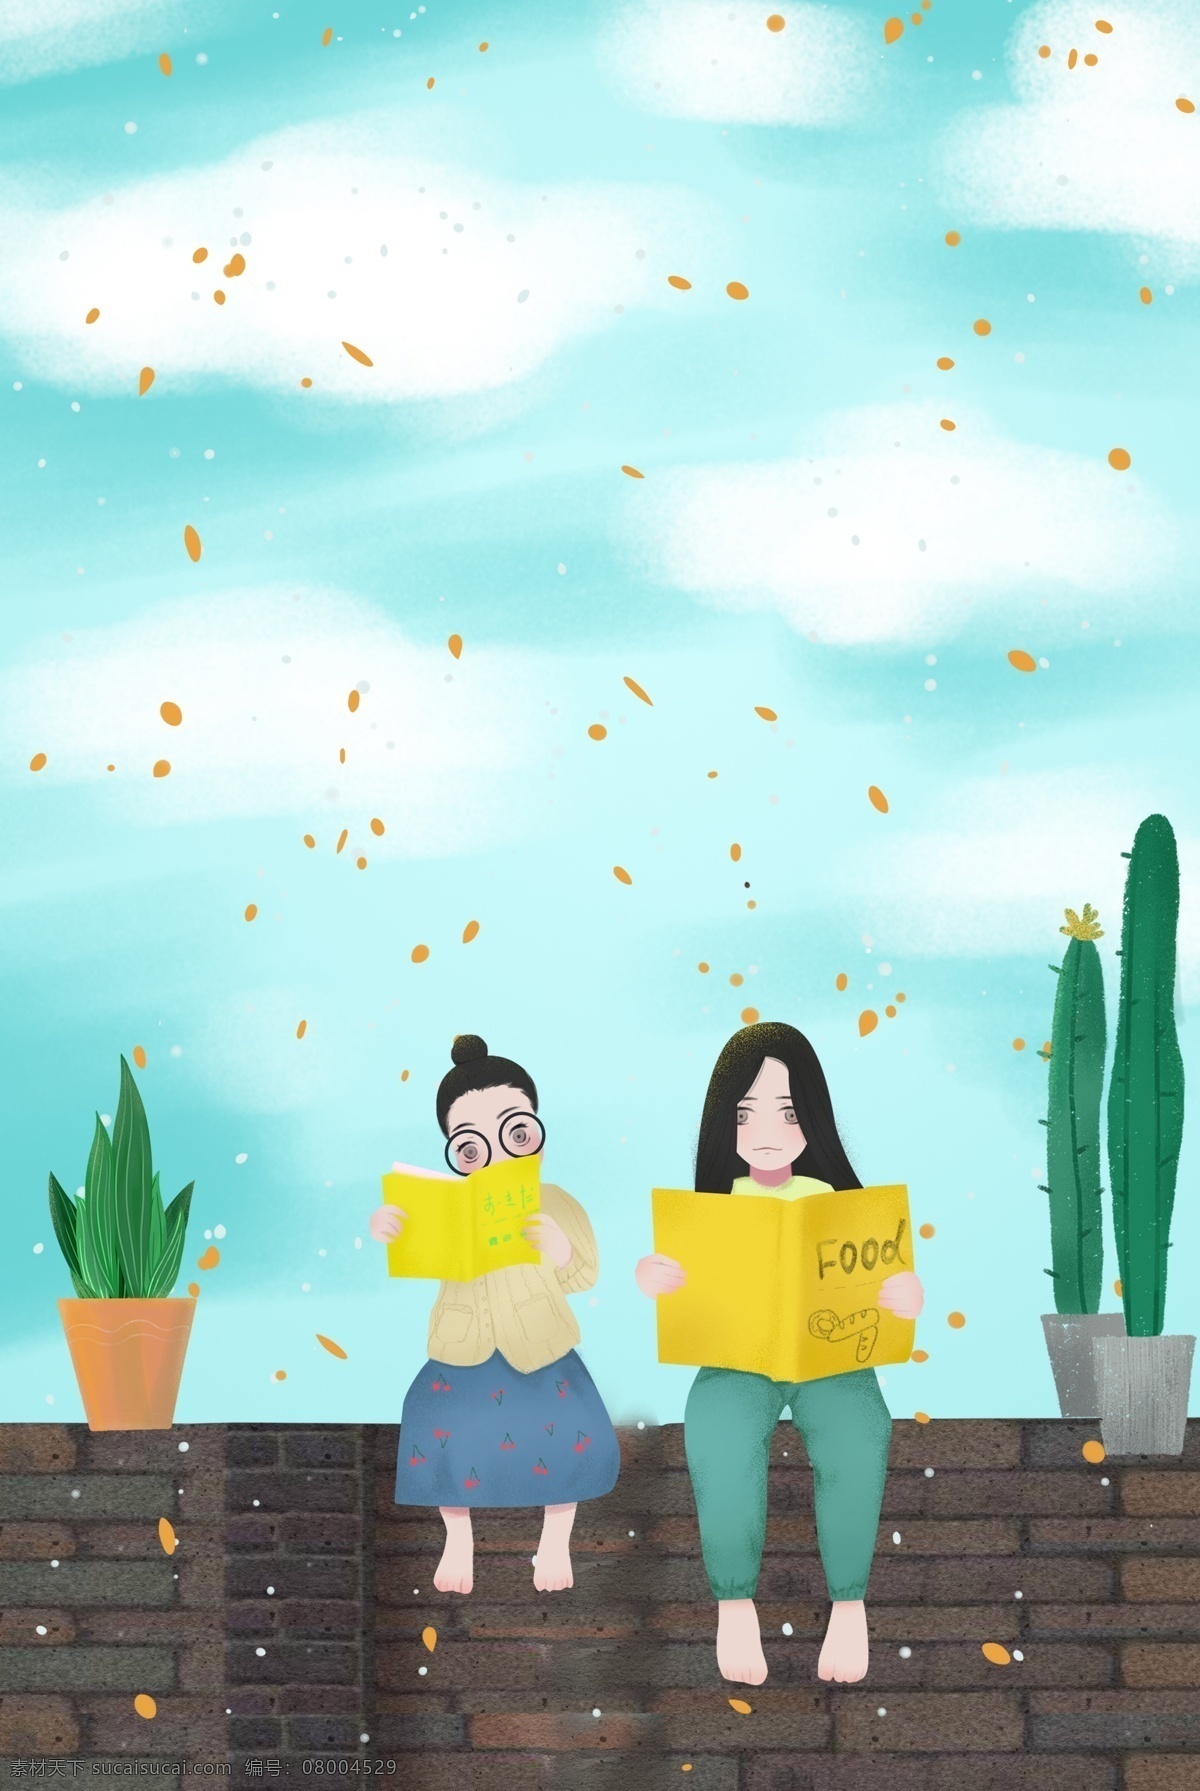 世界 读书 日 女孩 阅读 清新 插画 海报 世界读书日 书籍 春天 人物 植物 促销海报